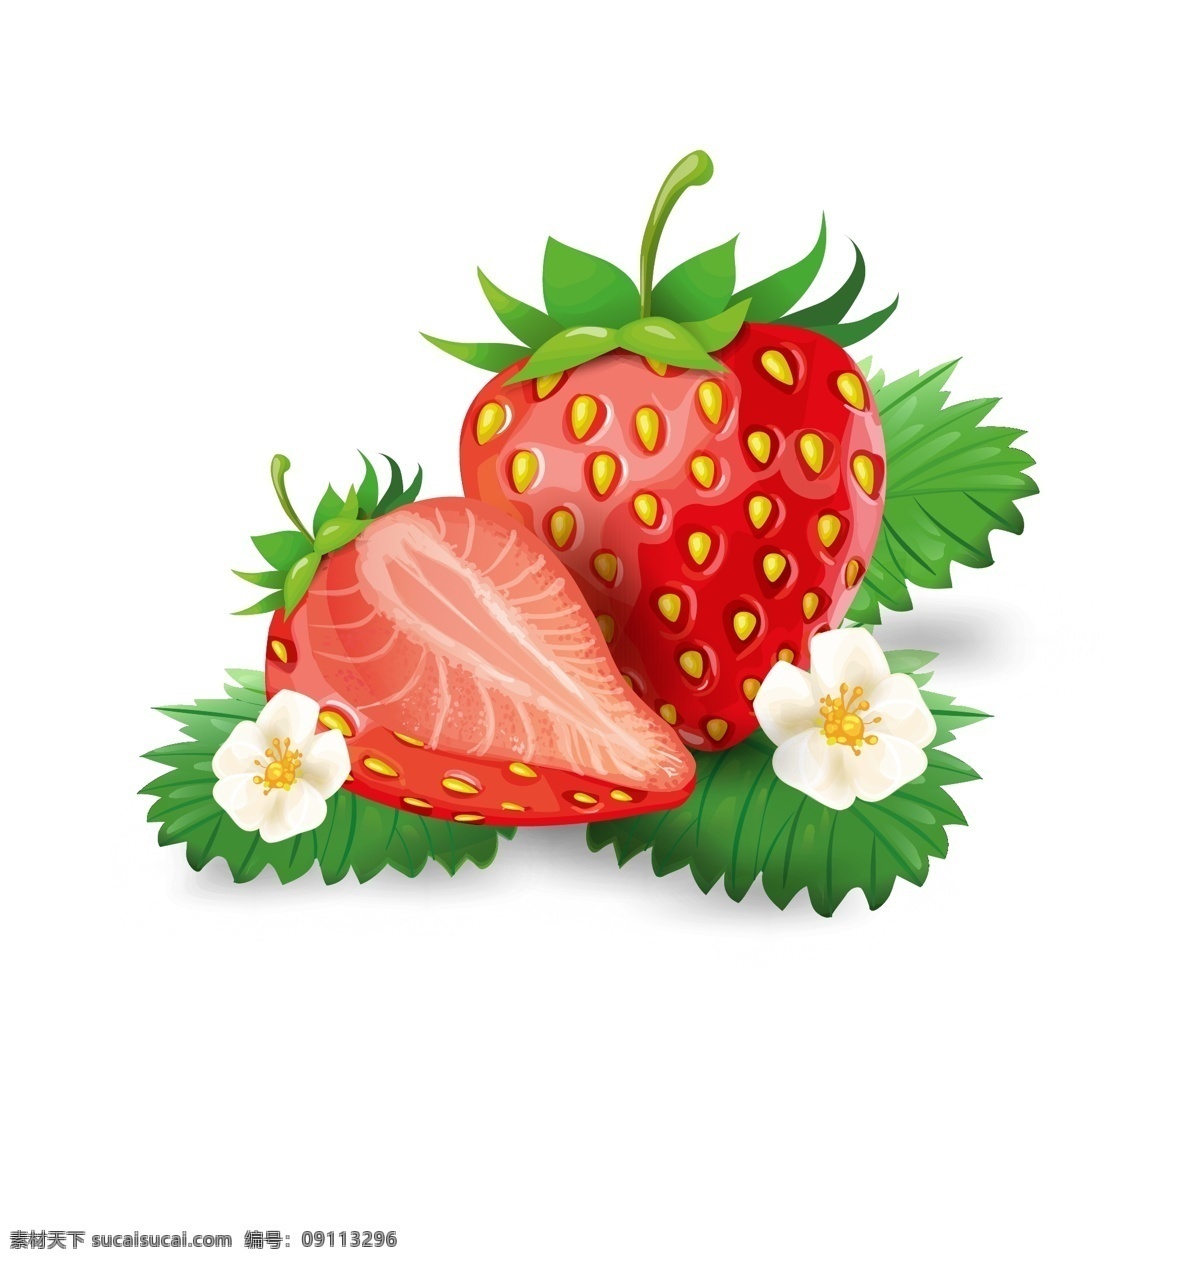 手绘草莓 矢量草莓 卡通草莓 草莓插画 逼真草莓 草莓几何 草莓汁 切开草莓 水果草莓 红色草莓 创意草莓 元素